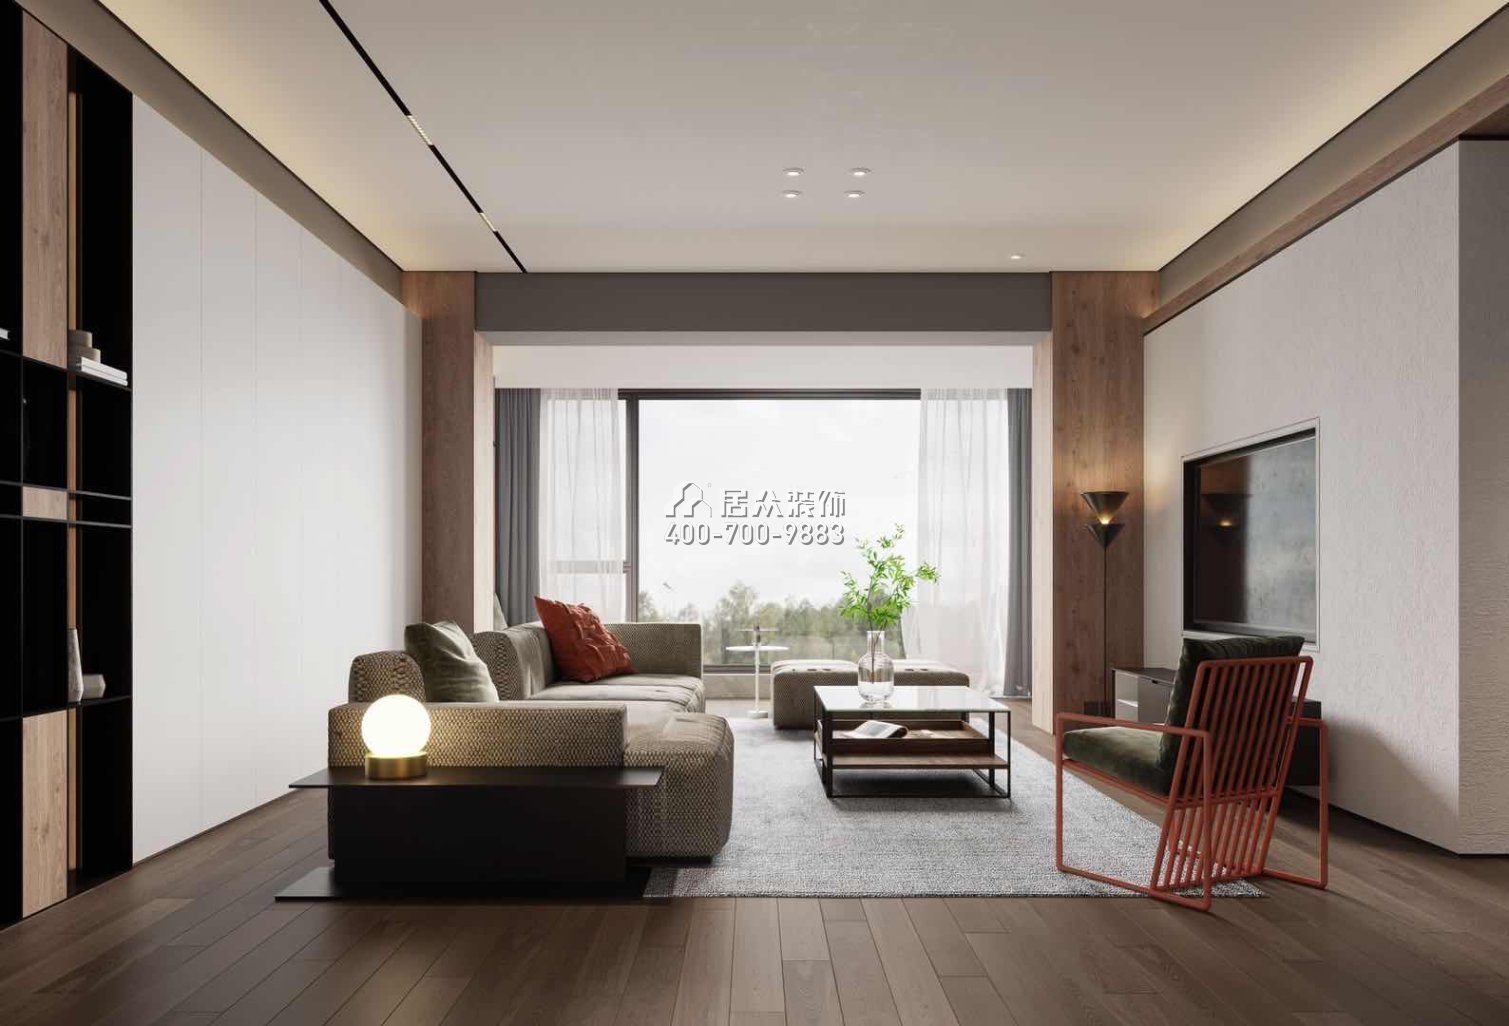 中建江山壹号197平方米现代简约风格平层户型客厅装修效果图